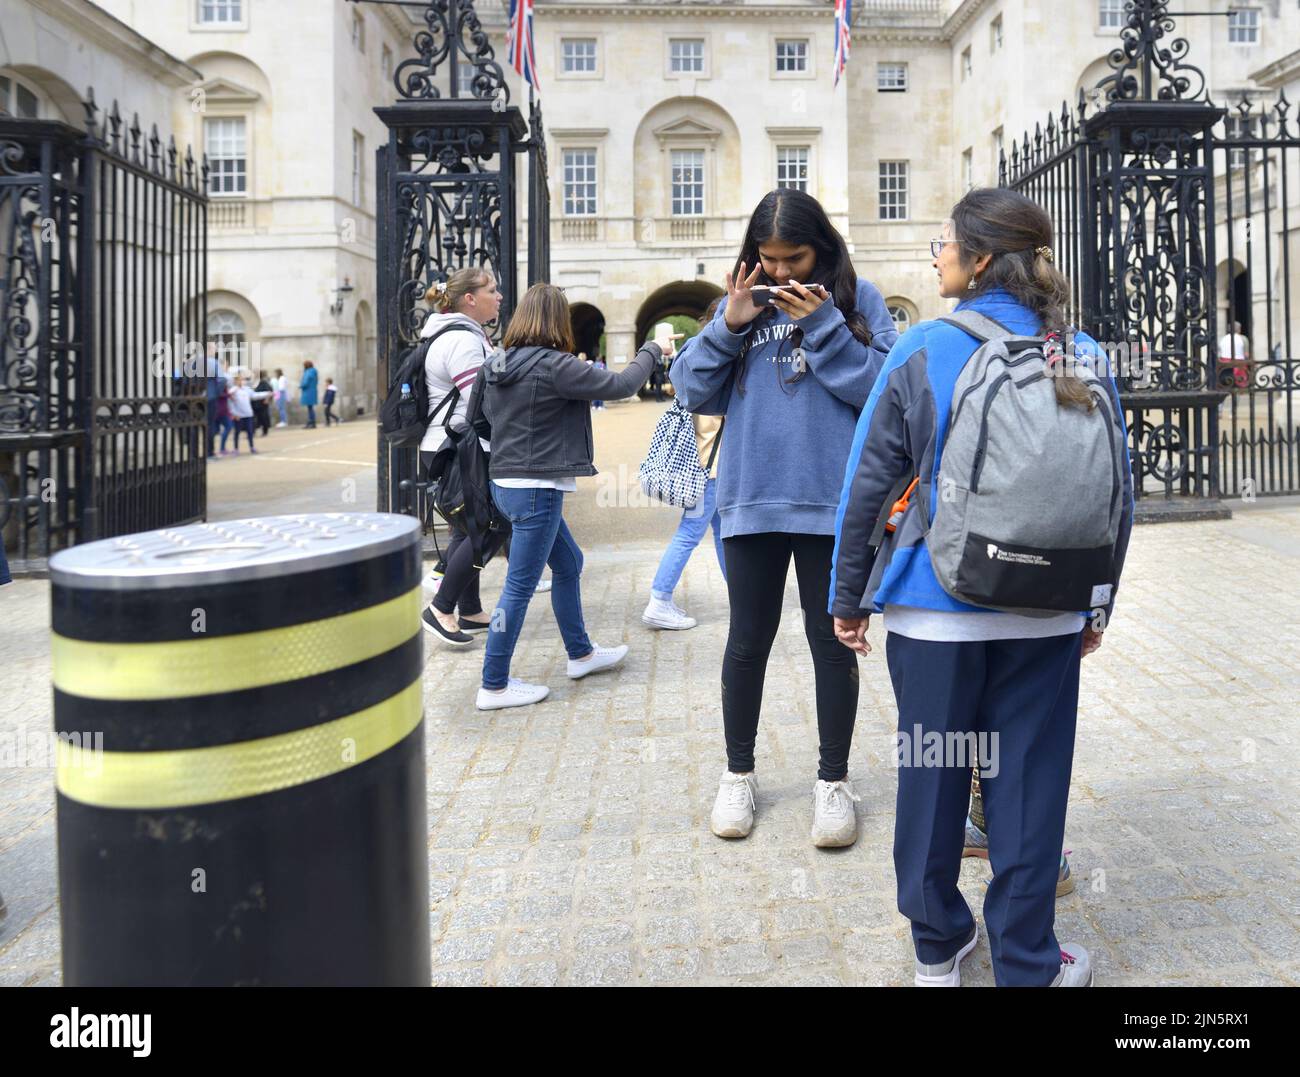 Londres, Angleterre, Royaume-Uni. Fille regardant son téléphone mobile à l'extérieur de Horse Guards Parade à Whitehall Banque D'Images